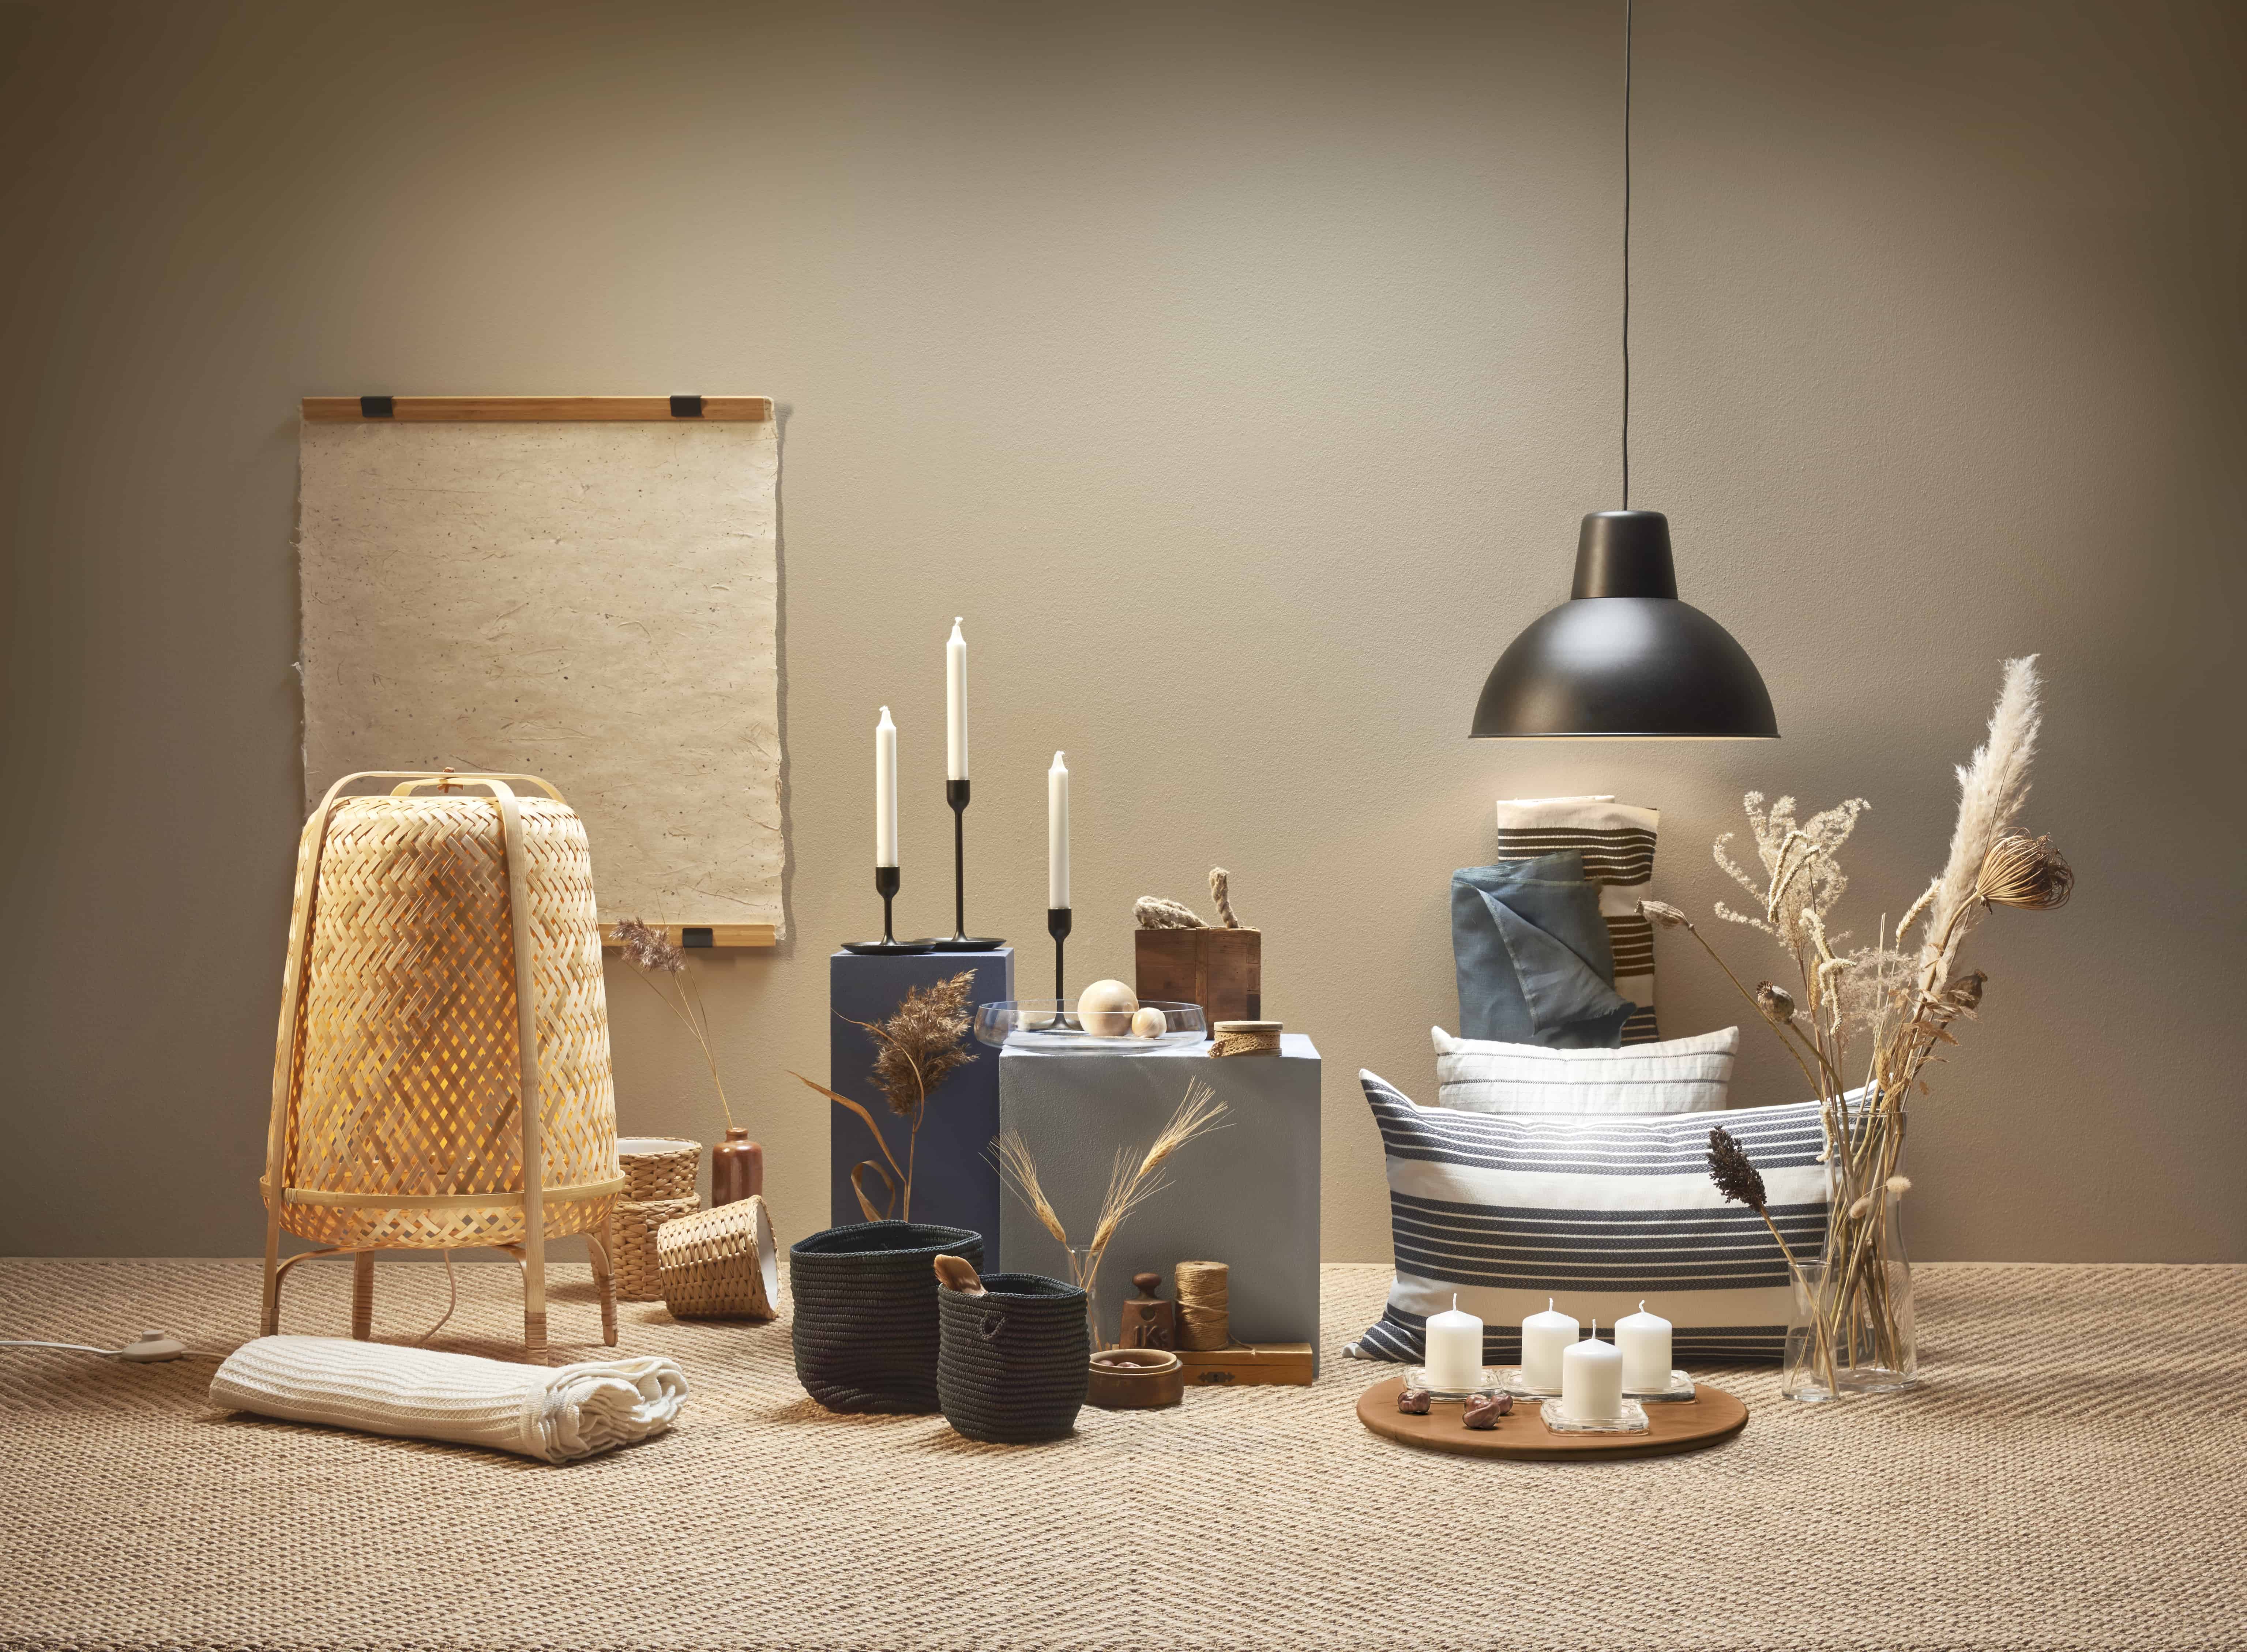 EcoLux☆Lifestyle: IKEA Celebrates Bamboo for Beauty and Sustainability